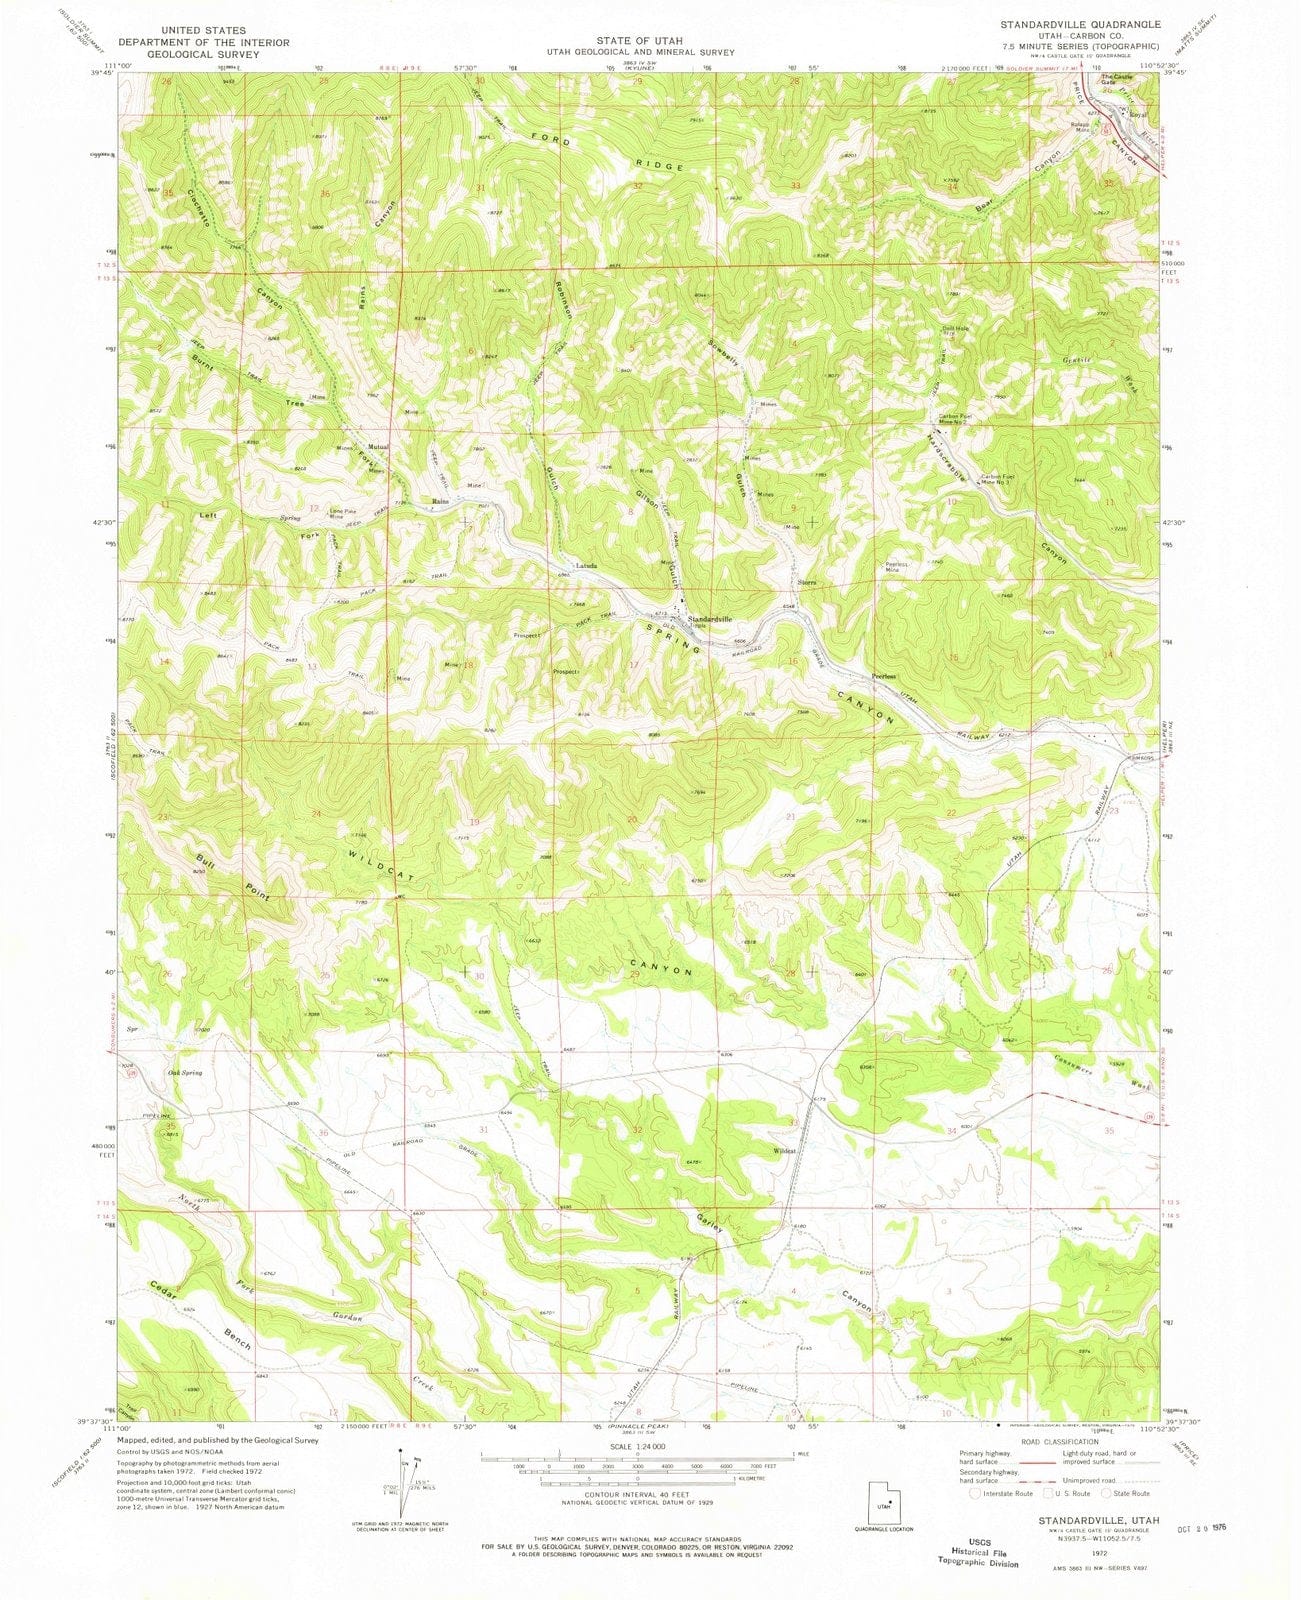 1972 Standardville, UT - Utah - USGS Topographic Map